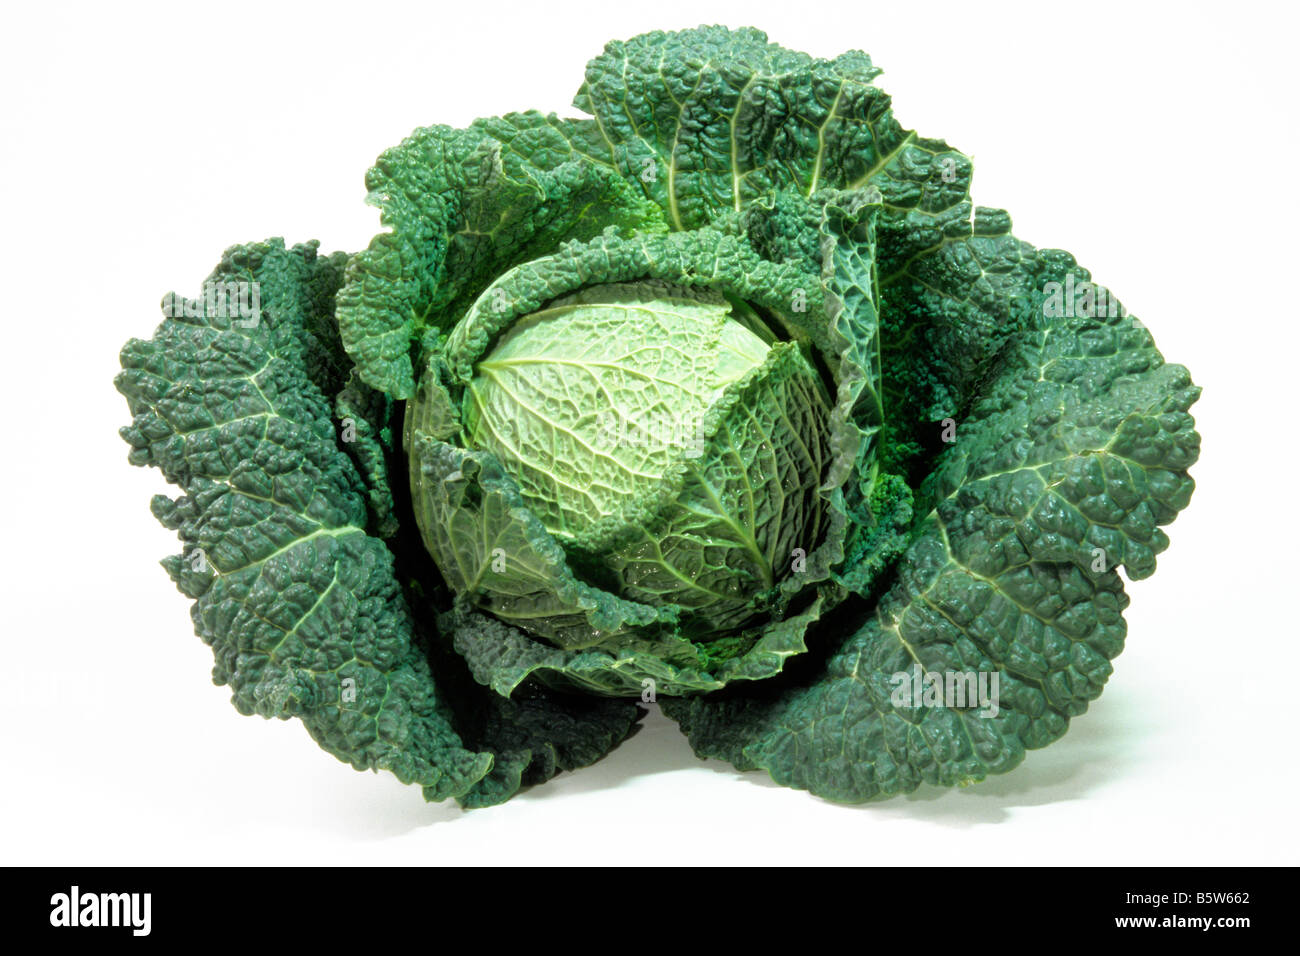 Savoy Cabbage (Brassica oleracea convar. capitata var. sabauda), studio picture Stock Photo